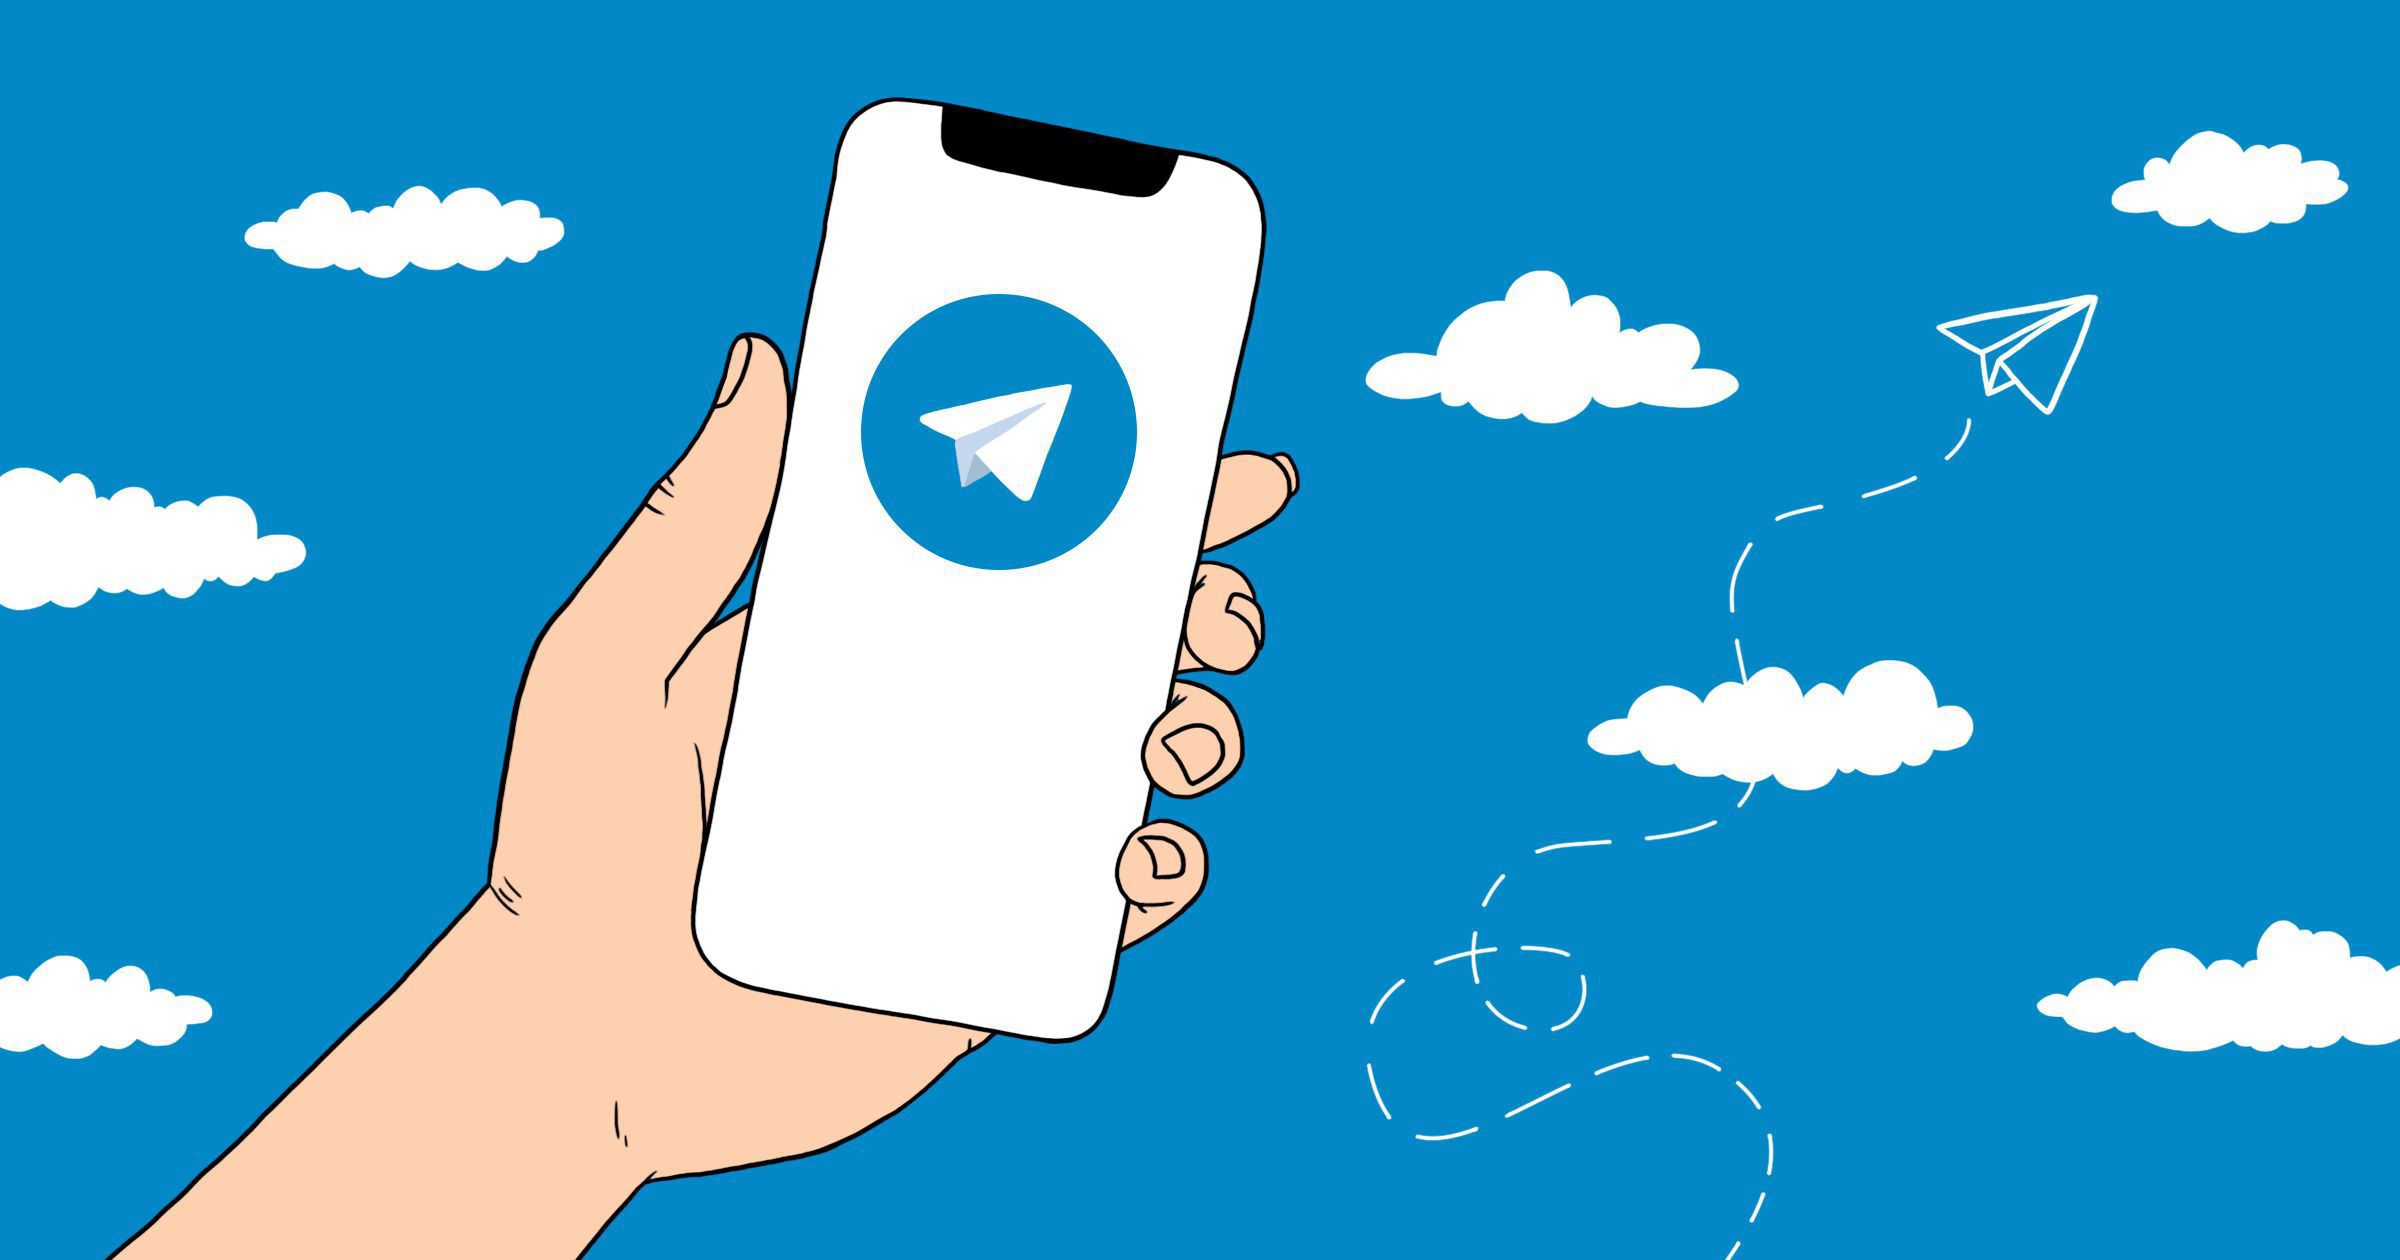 Павло Дуров розповів, що незабаром буде випущена нова версія Telegram для iOS. Telegram чекають великі зміни.